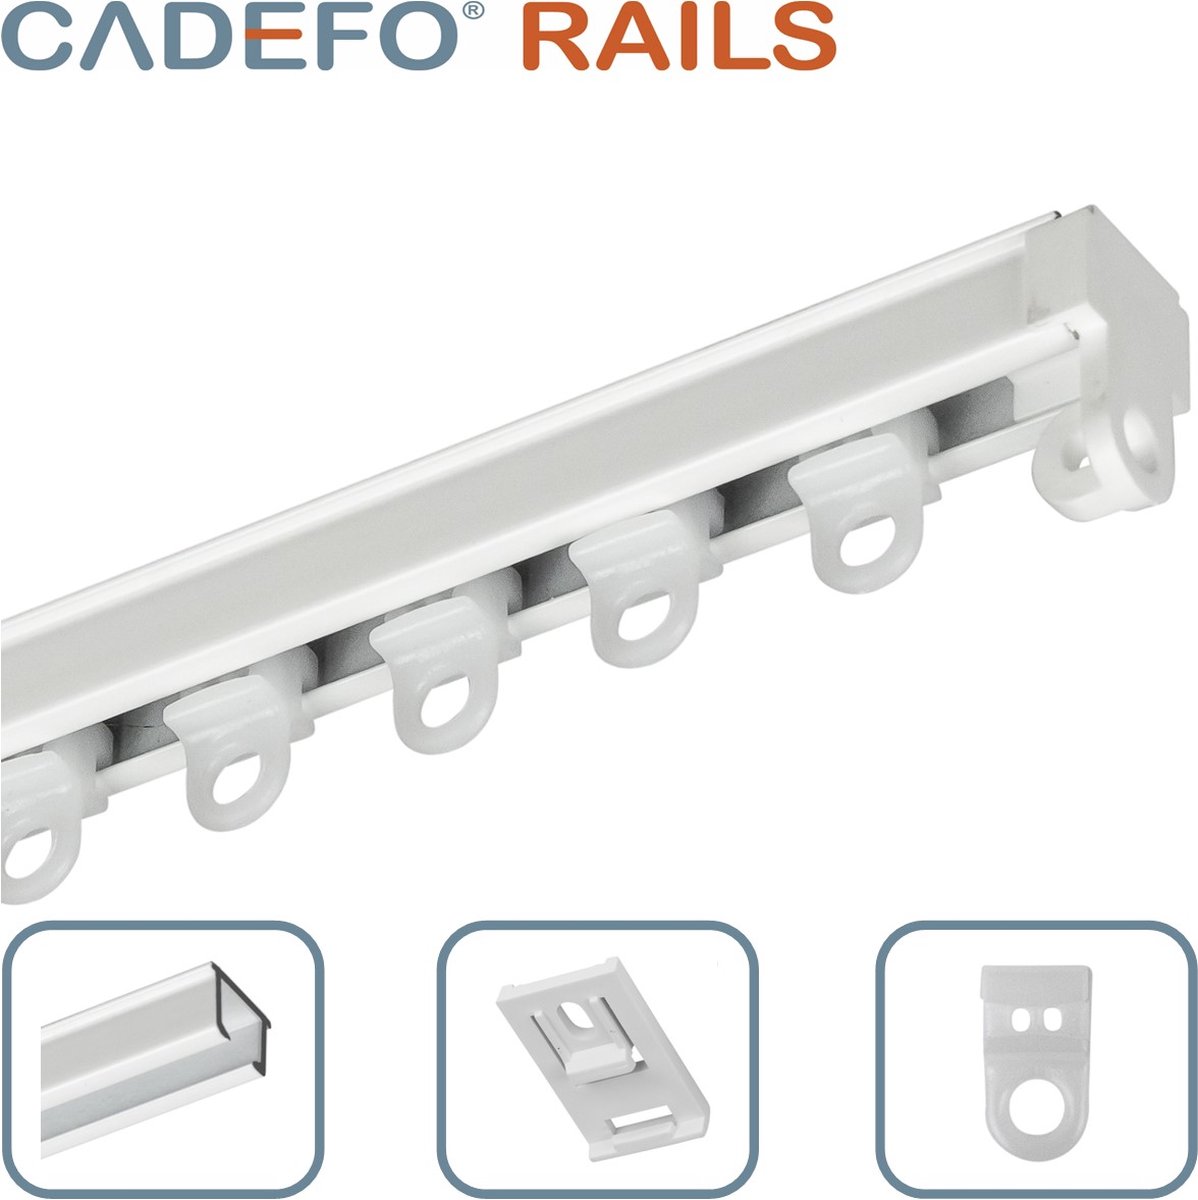 CADEFO RAILS (401 - 450 cm) Gordijnrails - Compleet op maat! - UIT 1 STUK - Leverbaar tot 6 meter - Plafondbevestiging - Lengte 444 cm